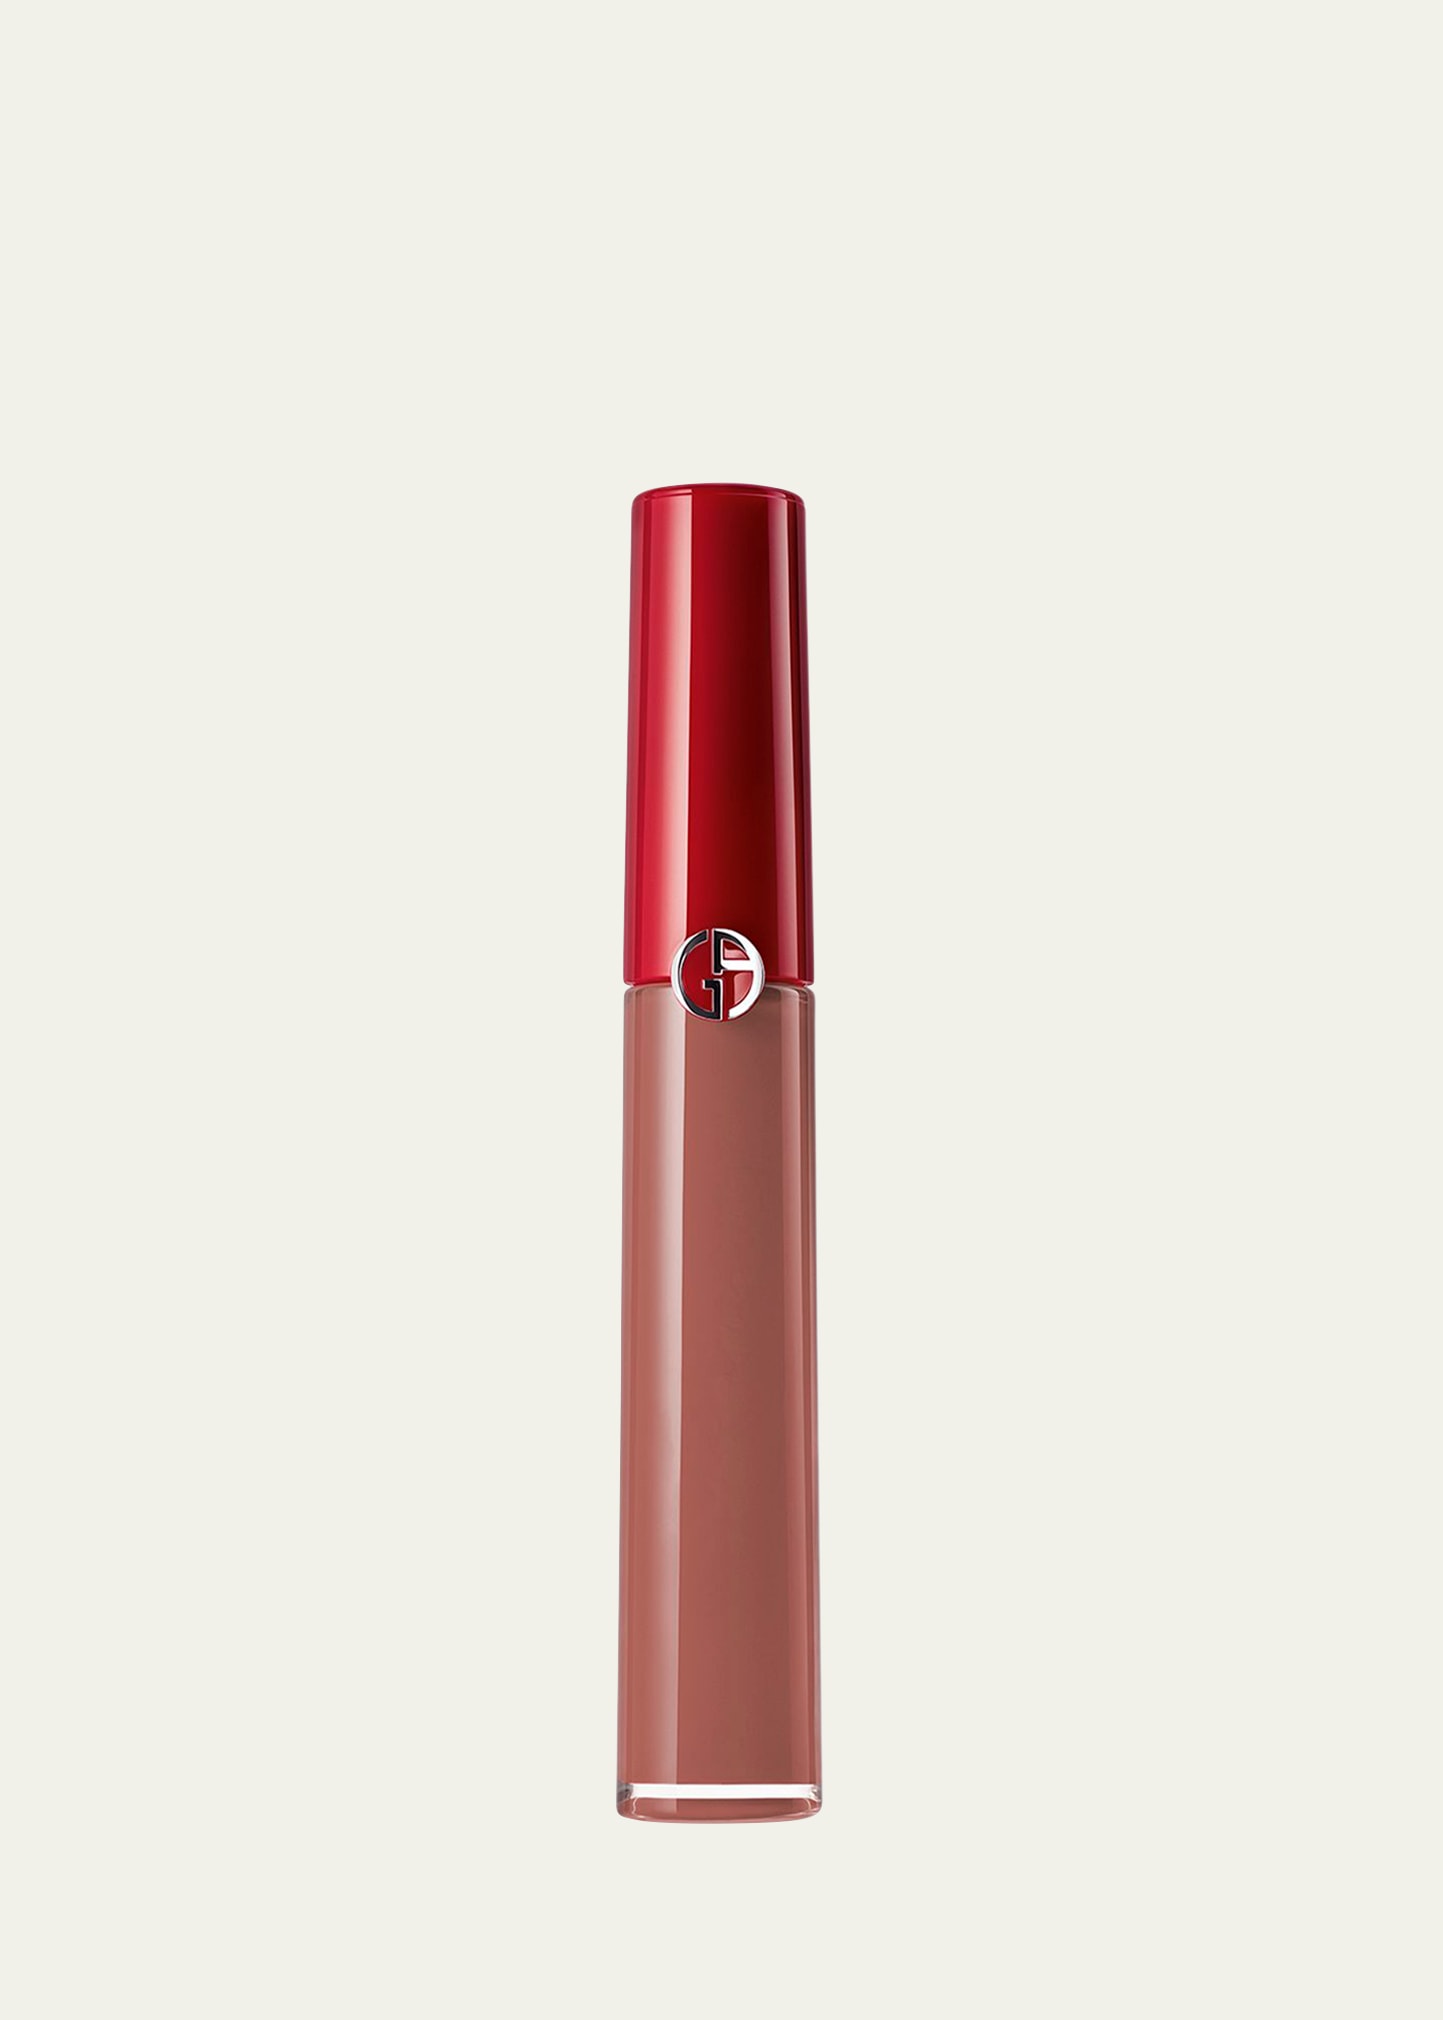 Armani Beauty Lip Maestro Liquid Lipstick In 202 Dolci